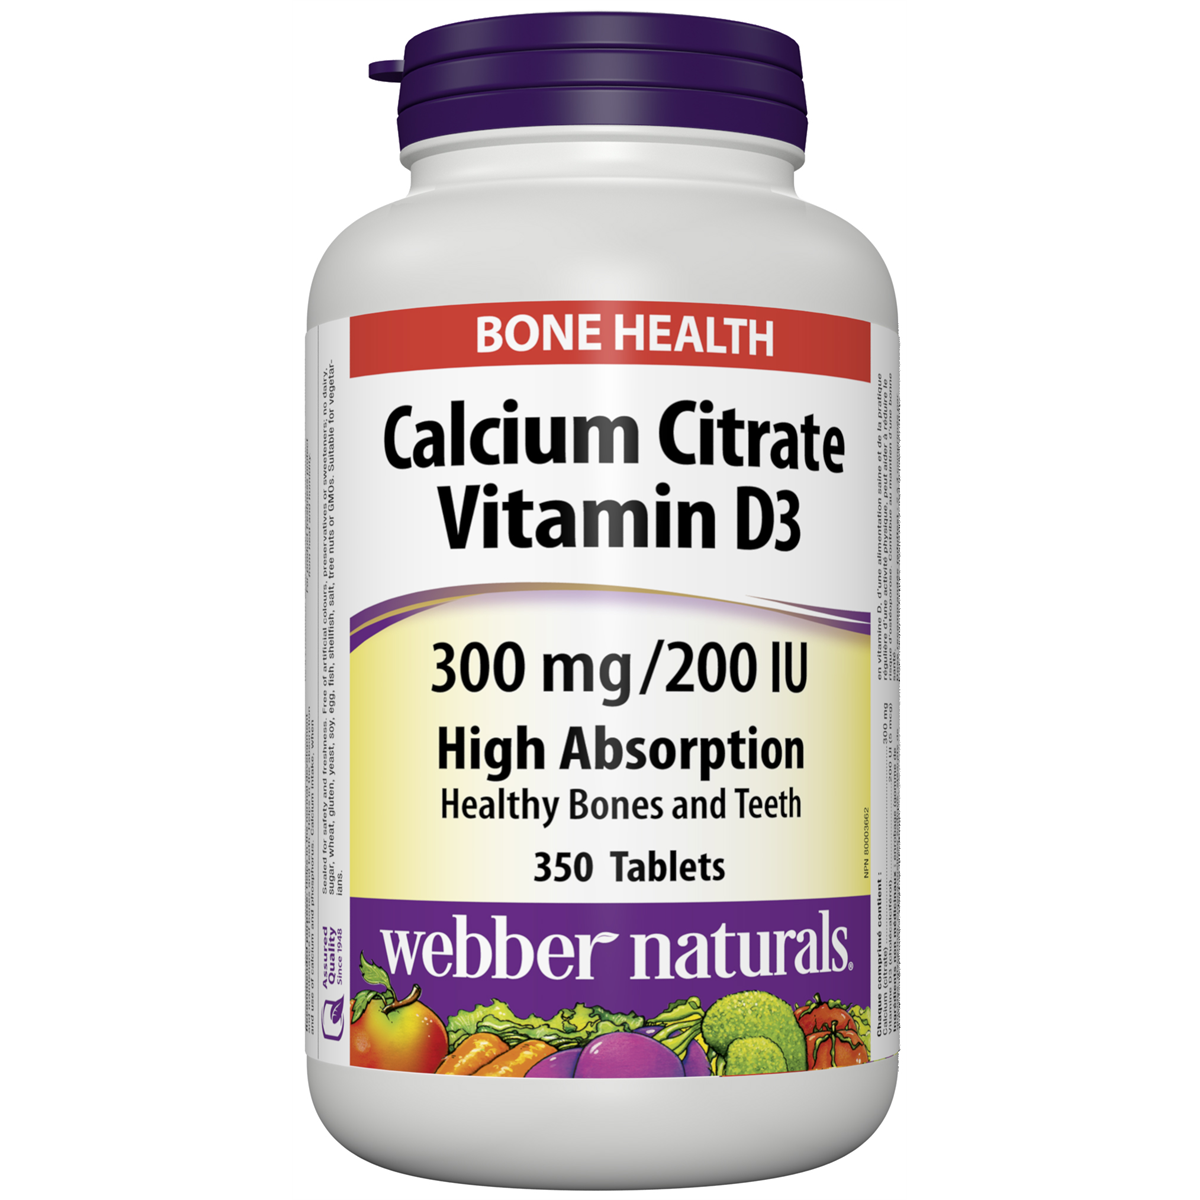 Calcium Citrate Vitamin D3 300 mg / 200 IU Tablets for Webber Naturals|v|hi-res|WN5163